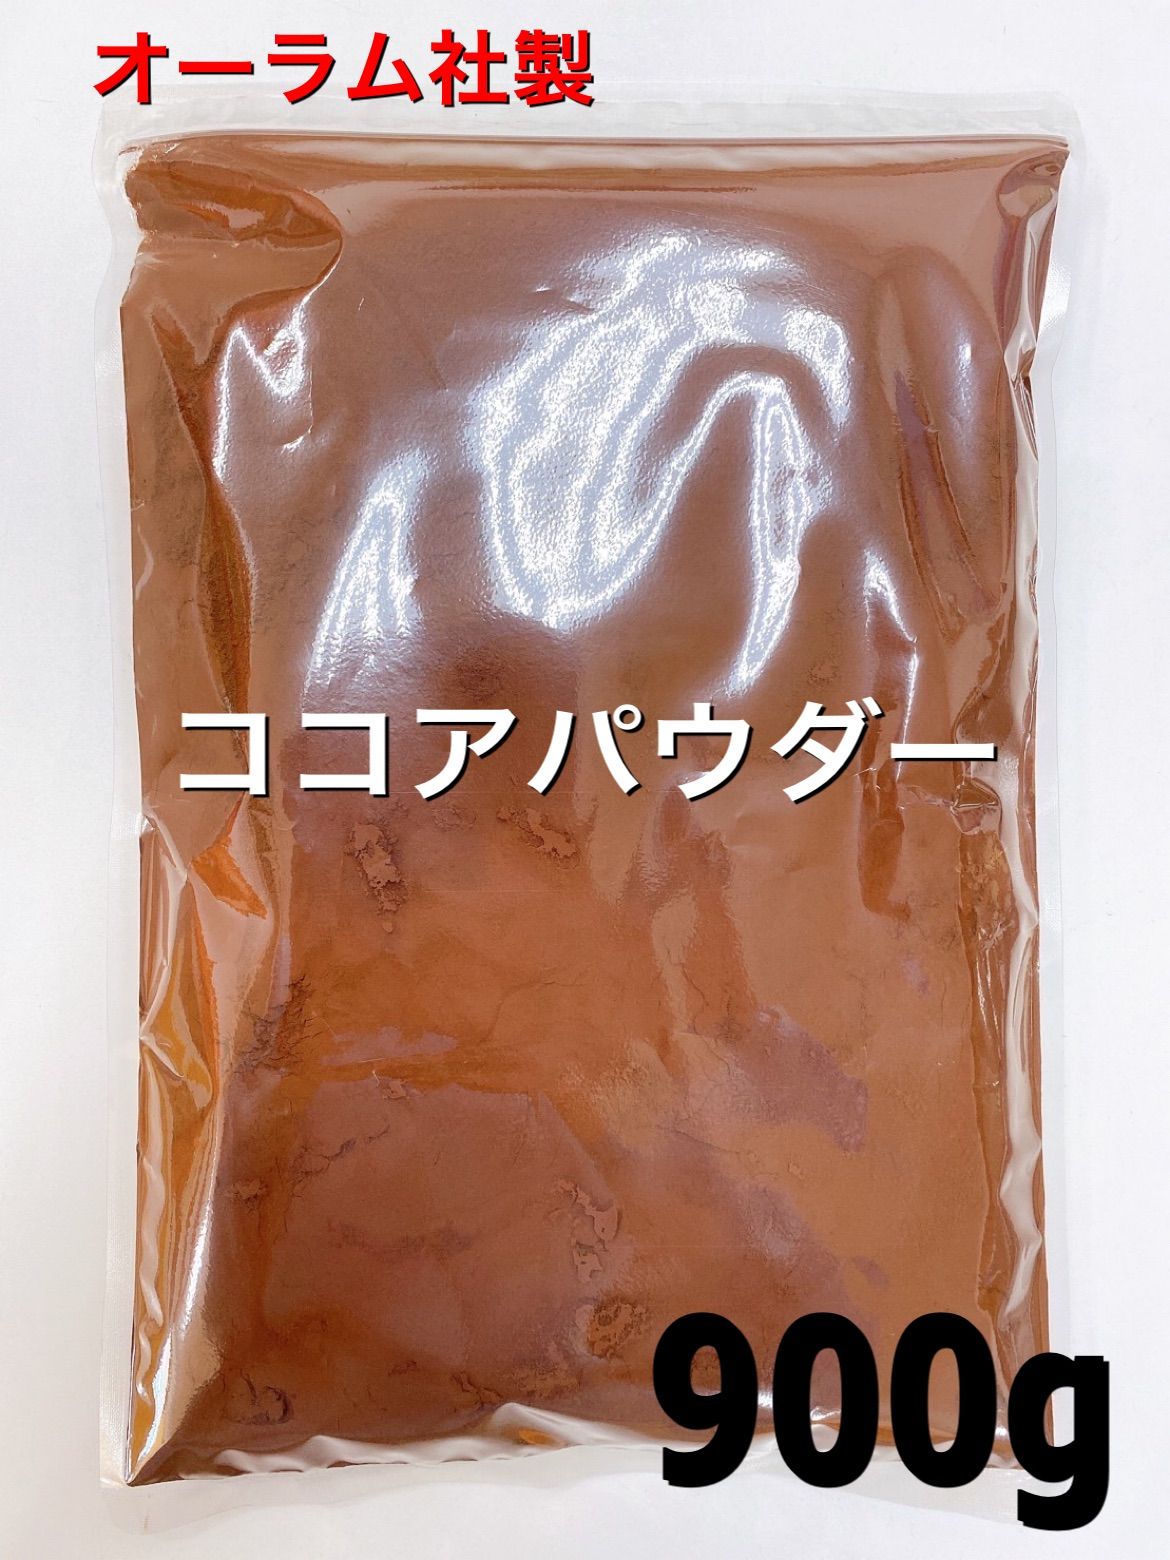 オーラム社製 ココアパウダー900g 無添加 砂糖不使用 カカオ豆-0